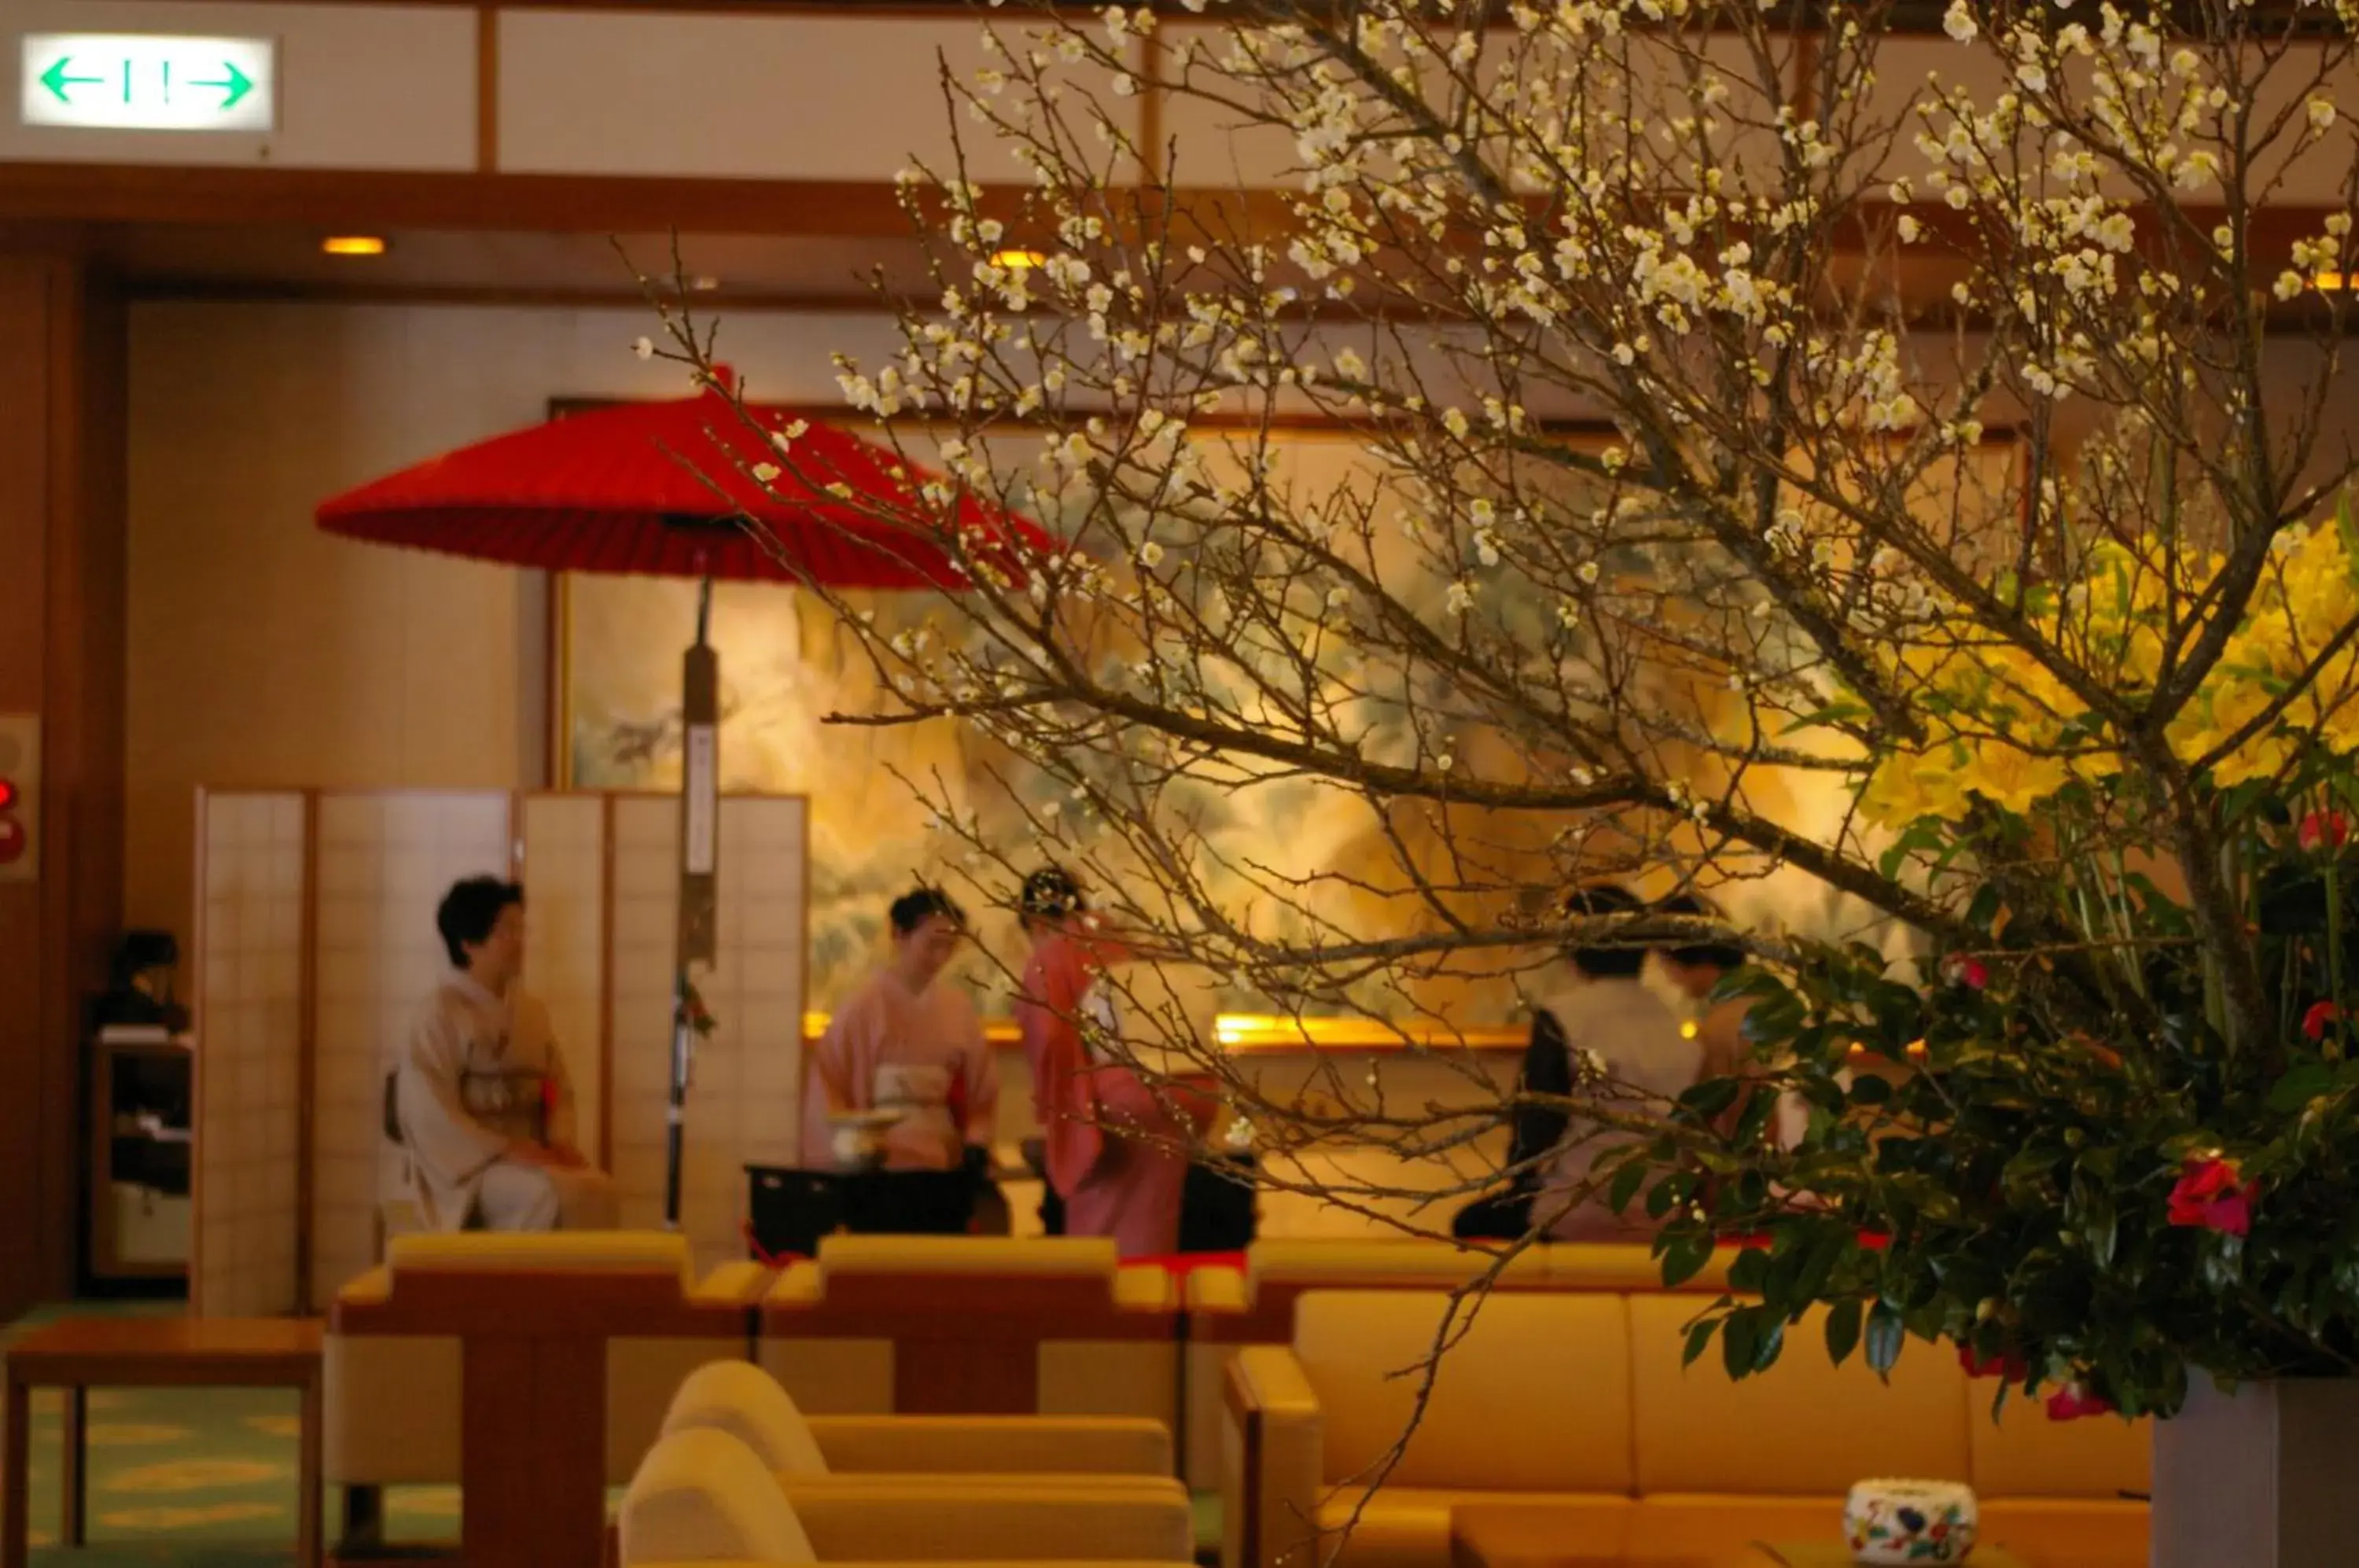 Lobby or reception in Takinoyu Hotel